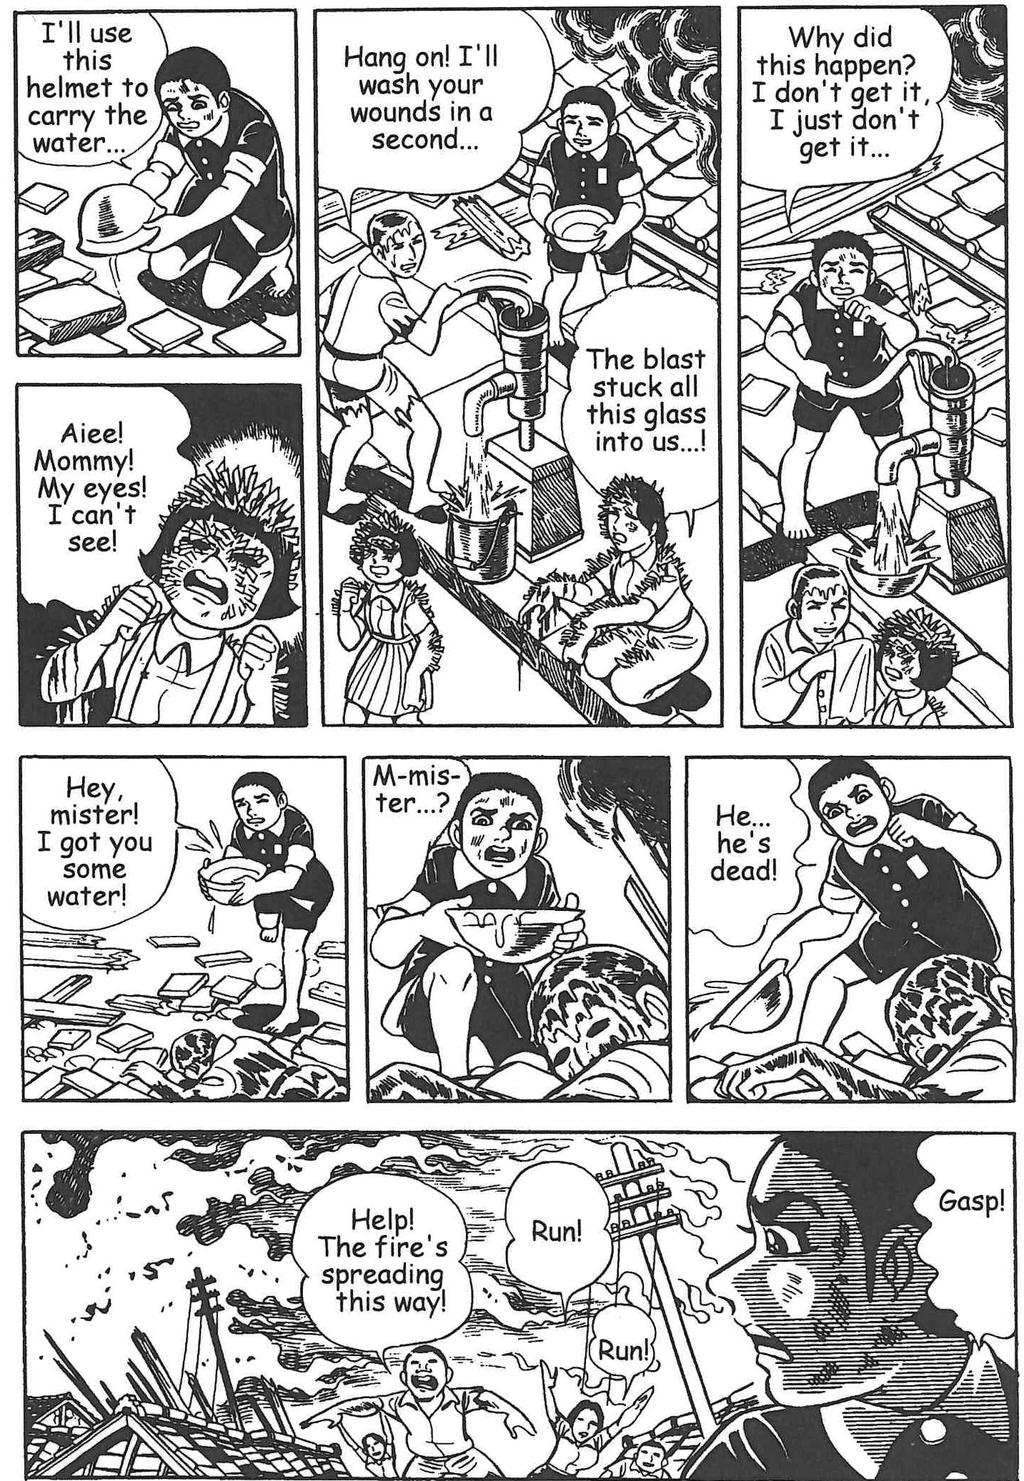 Extracts from Barefoot Gen Vol 1 Barefoot Gen: Vol 1 Keiji